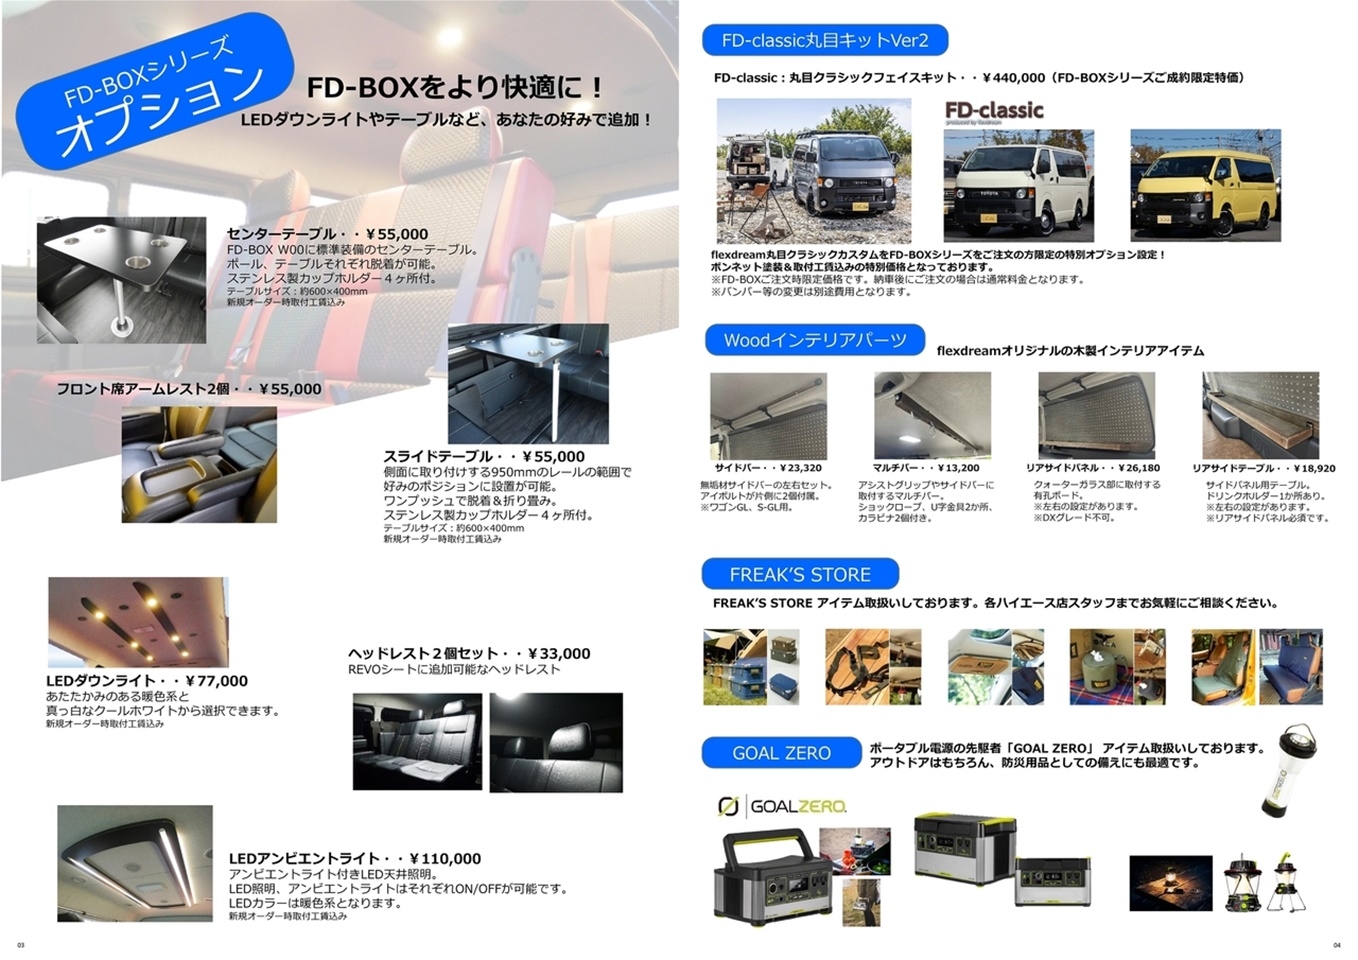 ハイエースワゴン 3列シート×バンライフスタイル【FD-BOX W04】